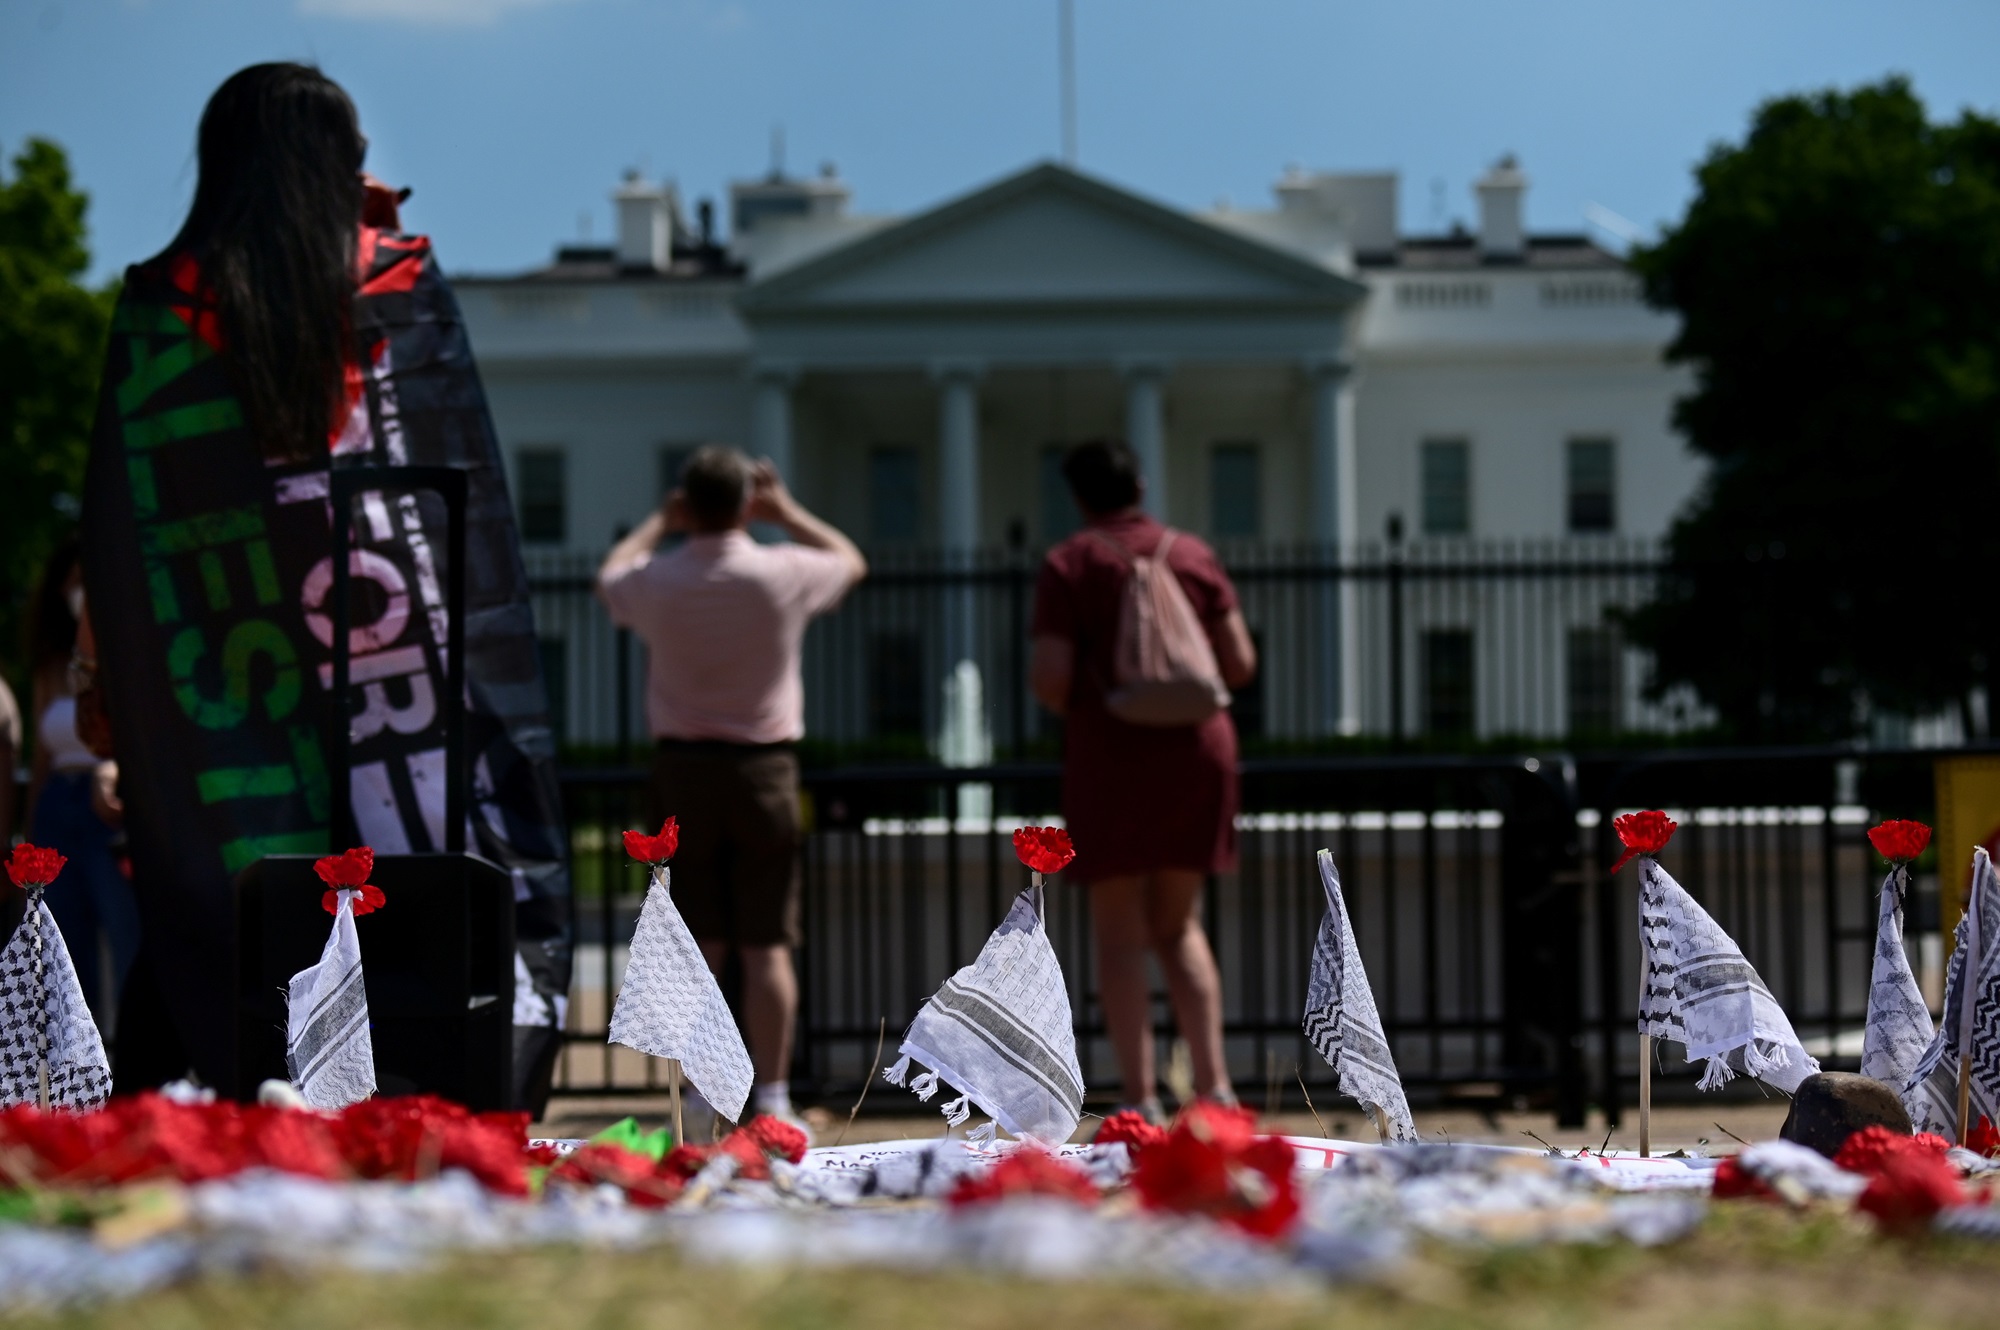 نشطاء يدعمون الفلسطينيين خارج البيت الأبيض في واشنطن - رويترز